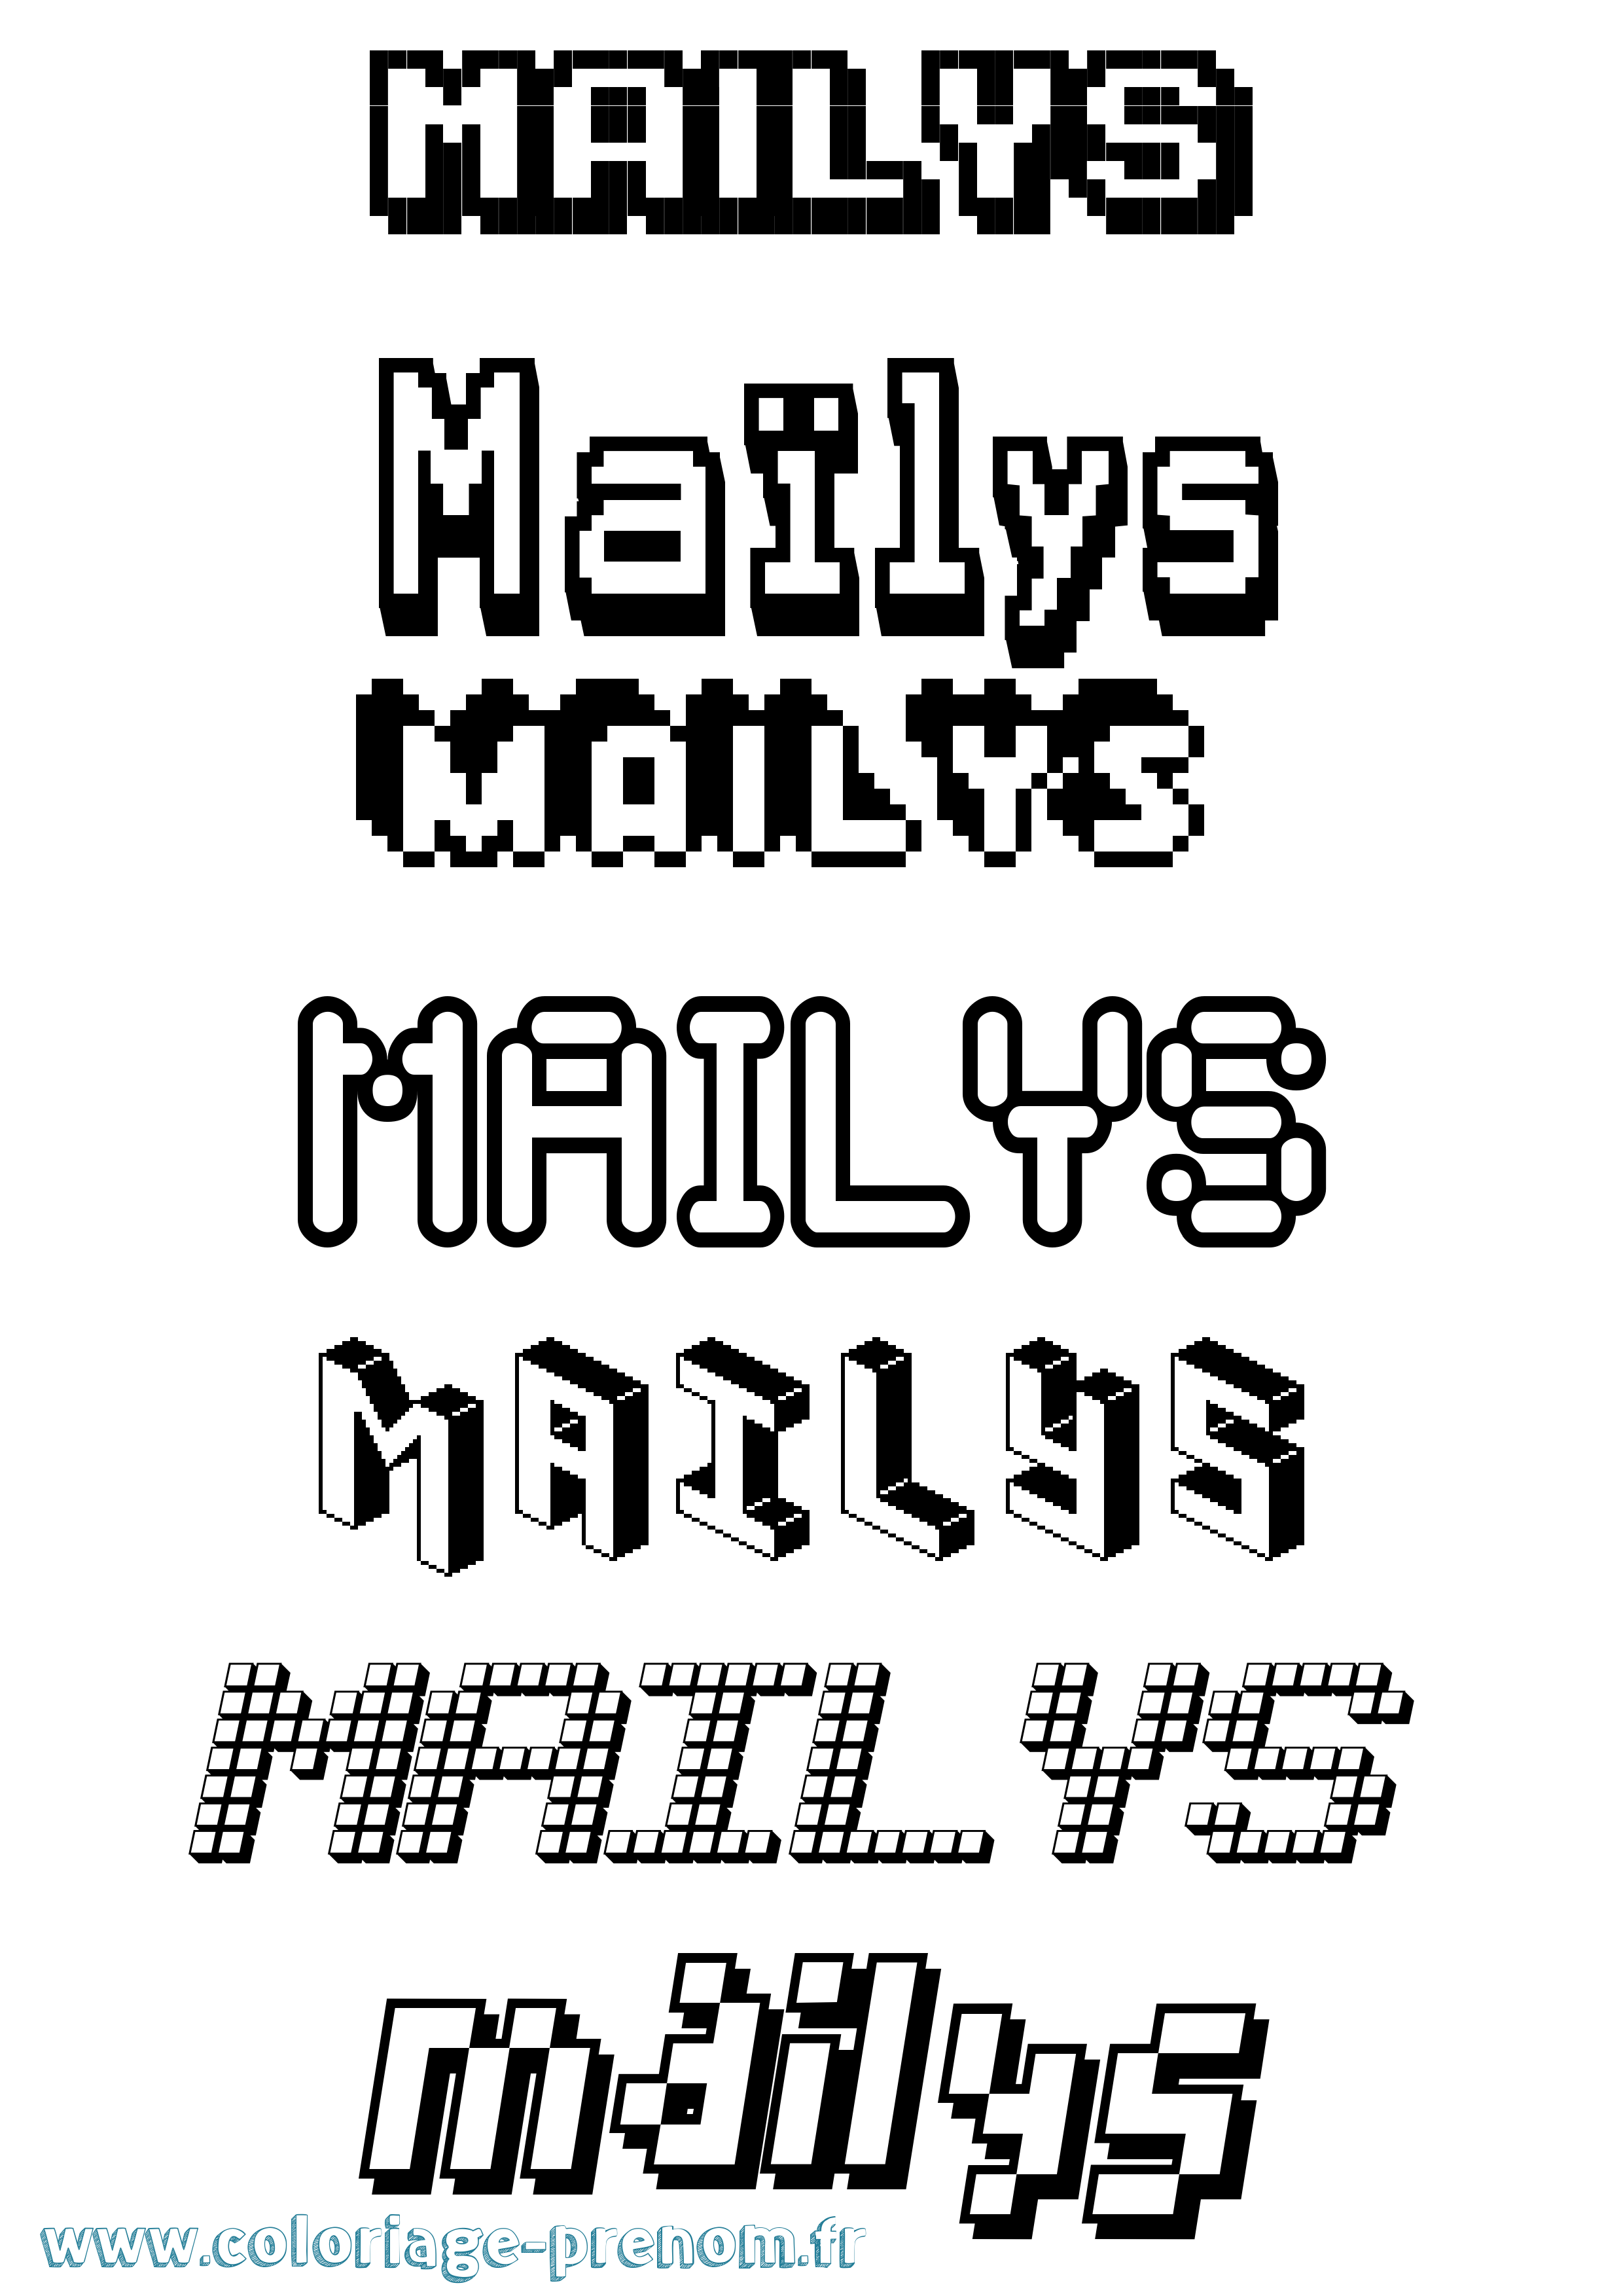 Coloriage prénom Maïlys Pixel